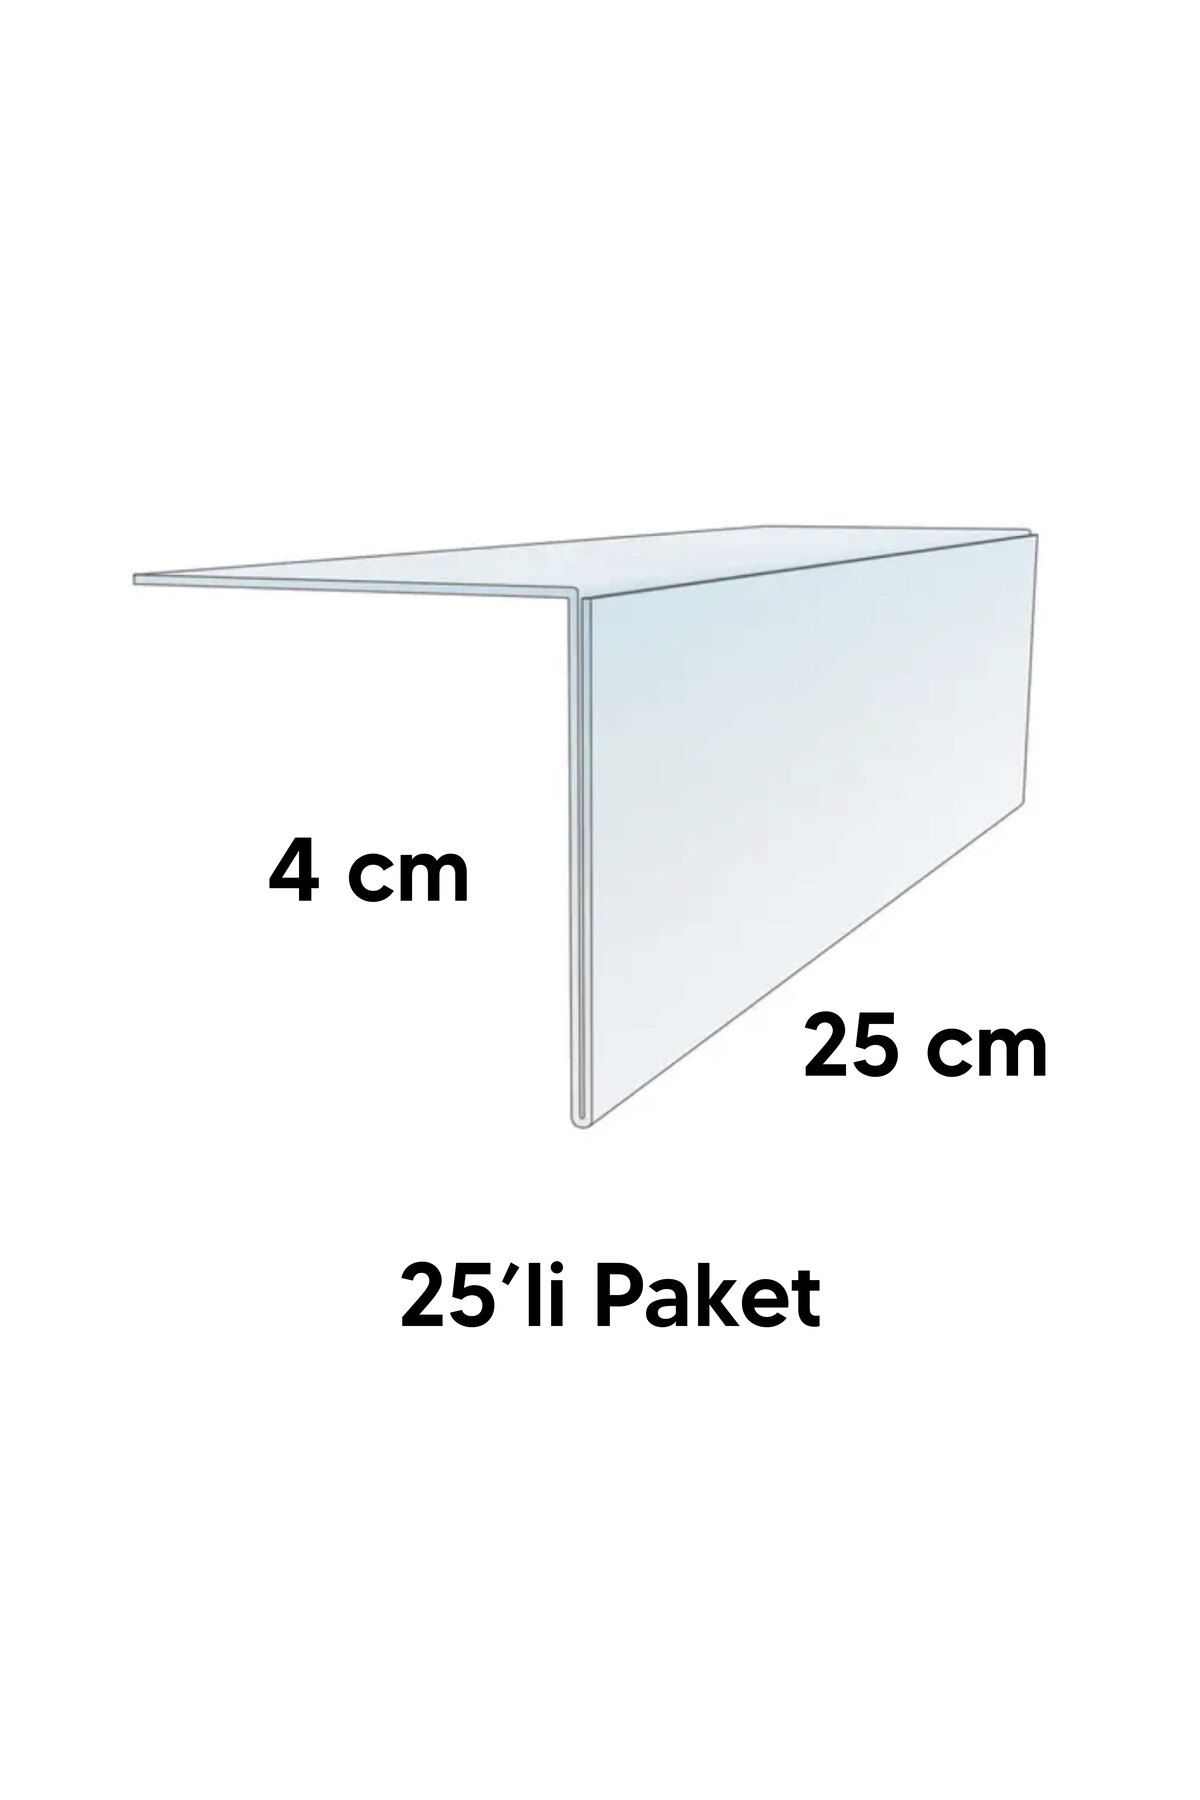 DamgaMarket PVC Yapışkanlı Açılı Raf Fiyat Etiketliği 4cm x 25 cm - 25'li Paket - PL-40250